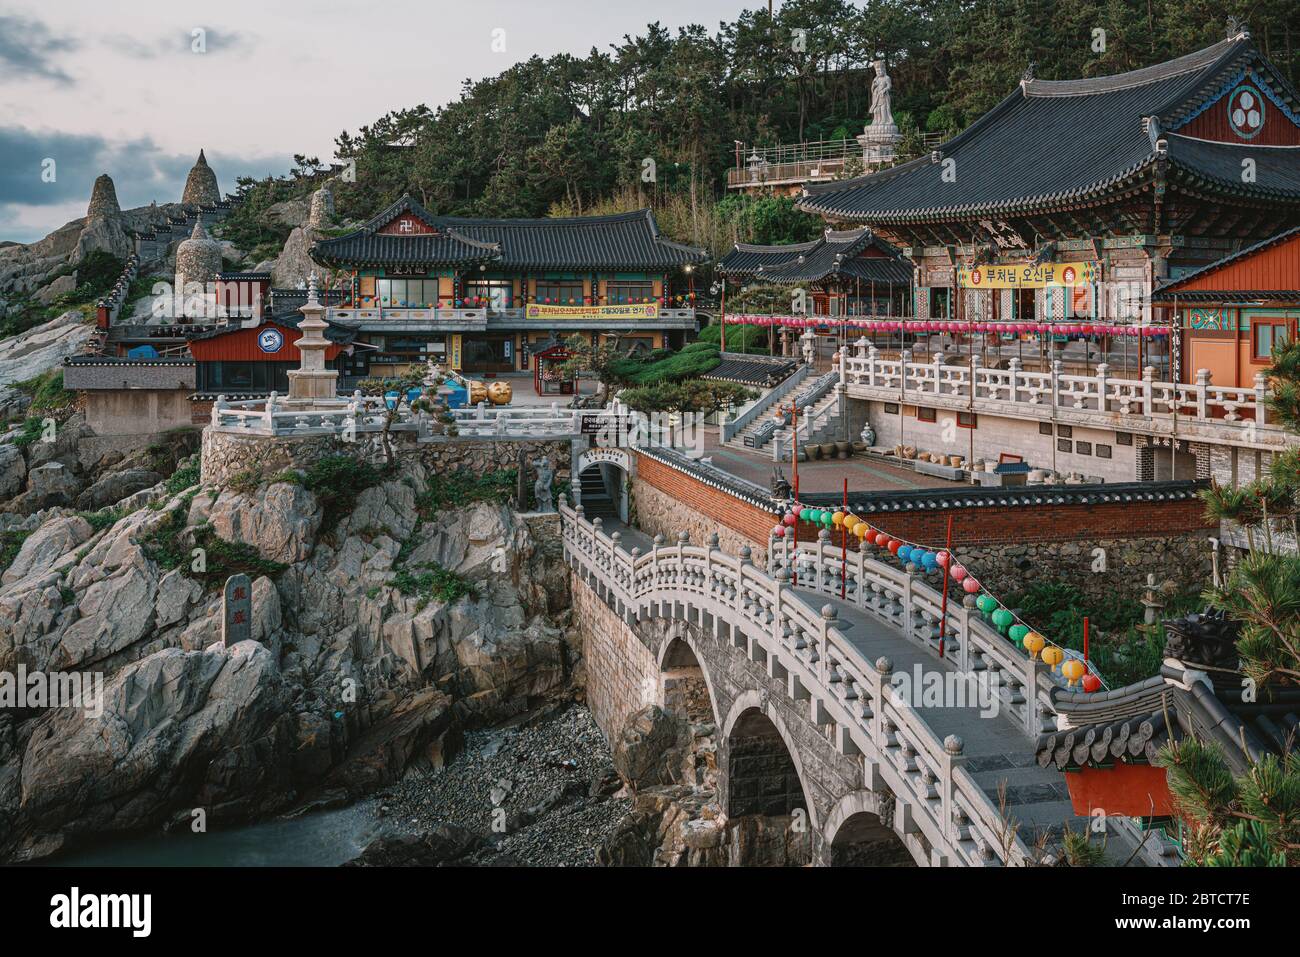 Busan, Corea del Sur - 22 de mayo de 2020: Haedong Yonggungsa, autoanunciado como el templo más hermoso de Corea, se encuentra en una costa rocosa al norte de Busan. Foto de stock